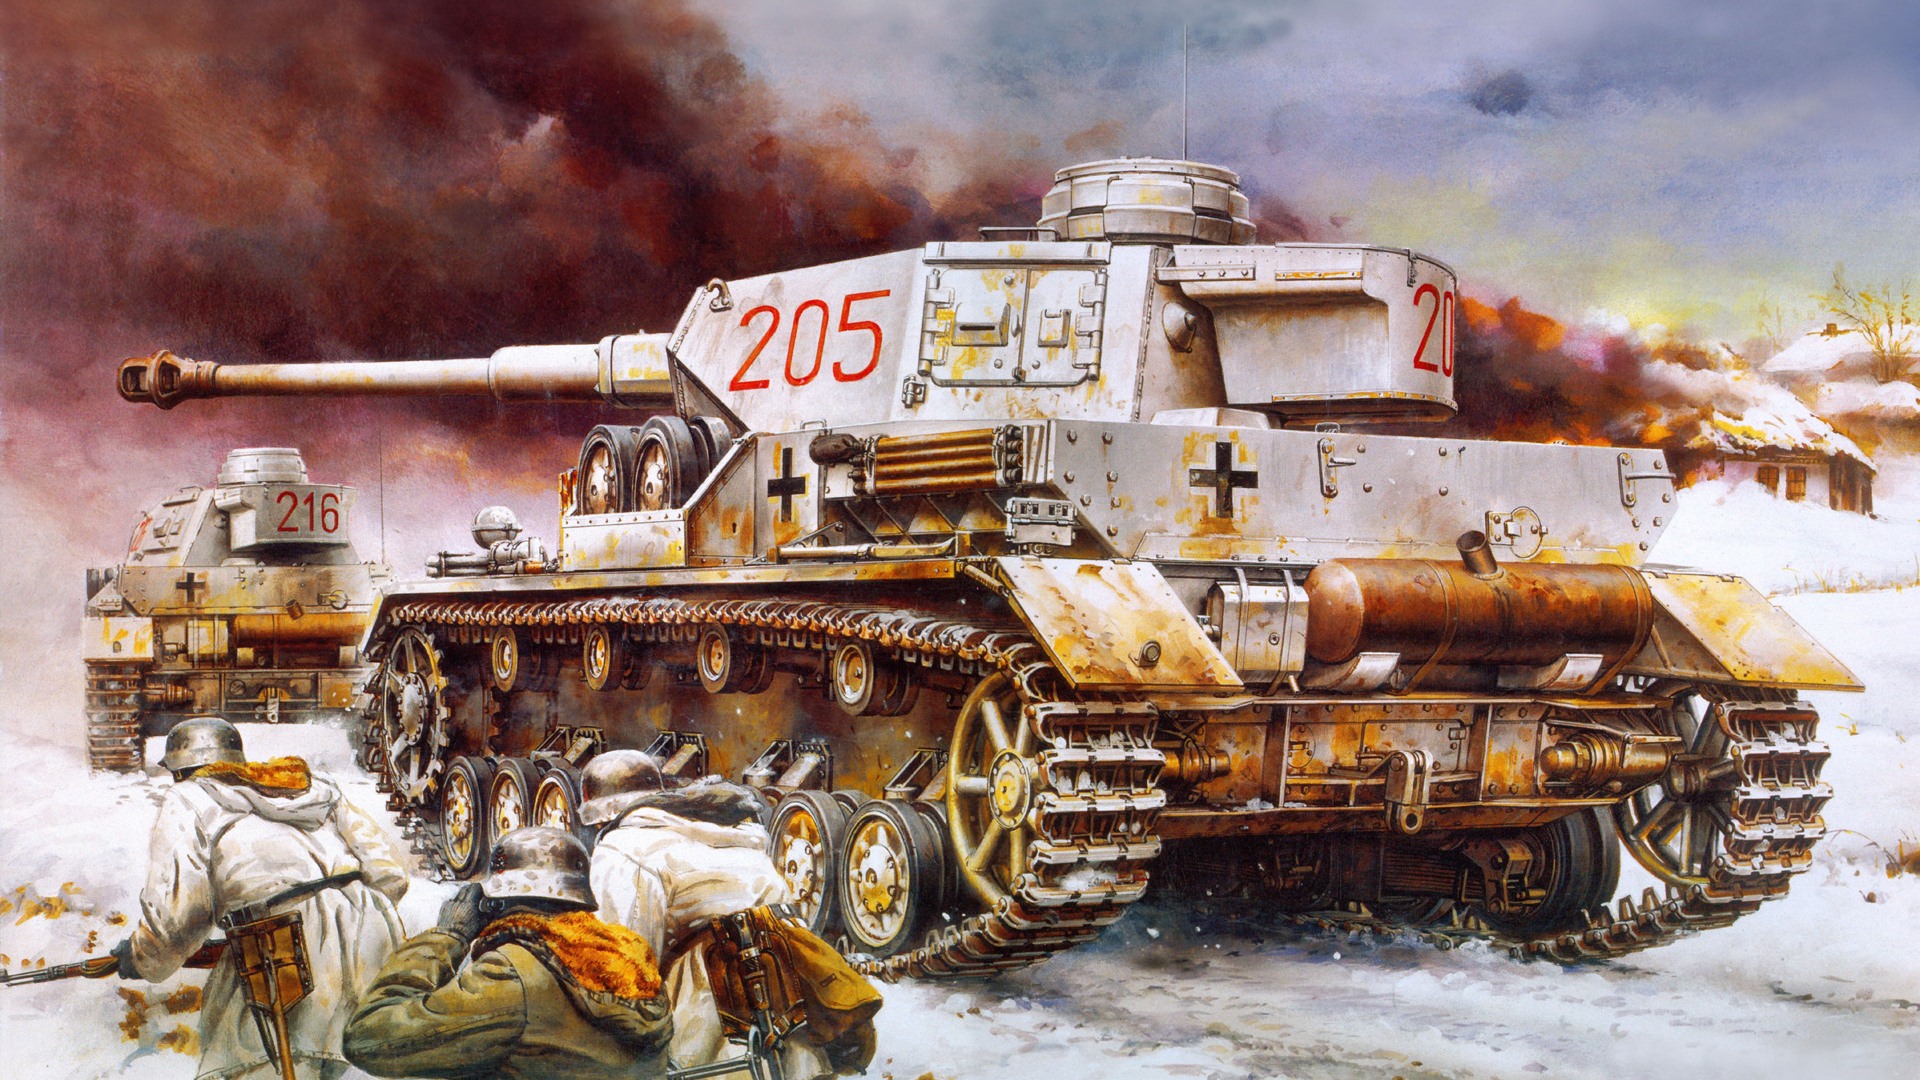 軍の戦車、装甲HDの絵画壁紙 #15 - 1920x1080